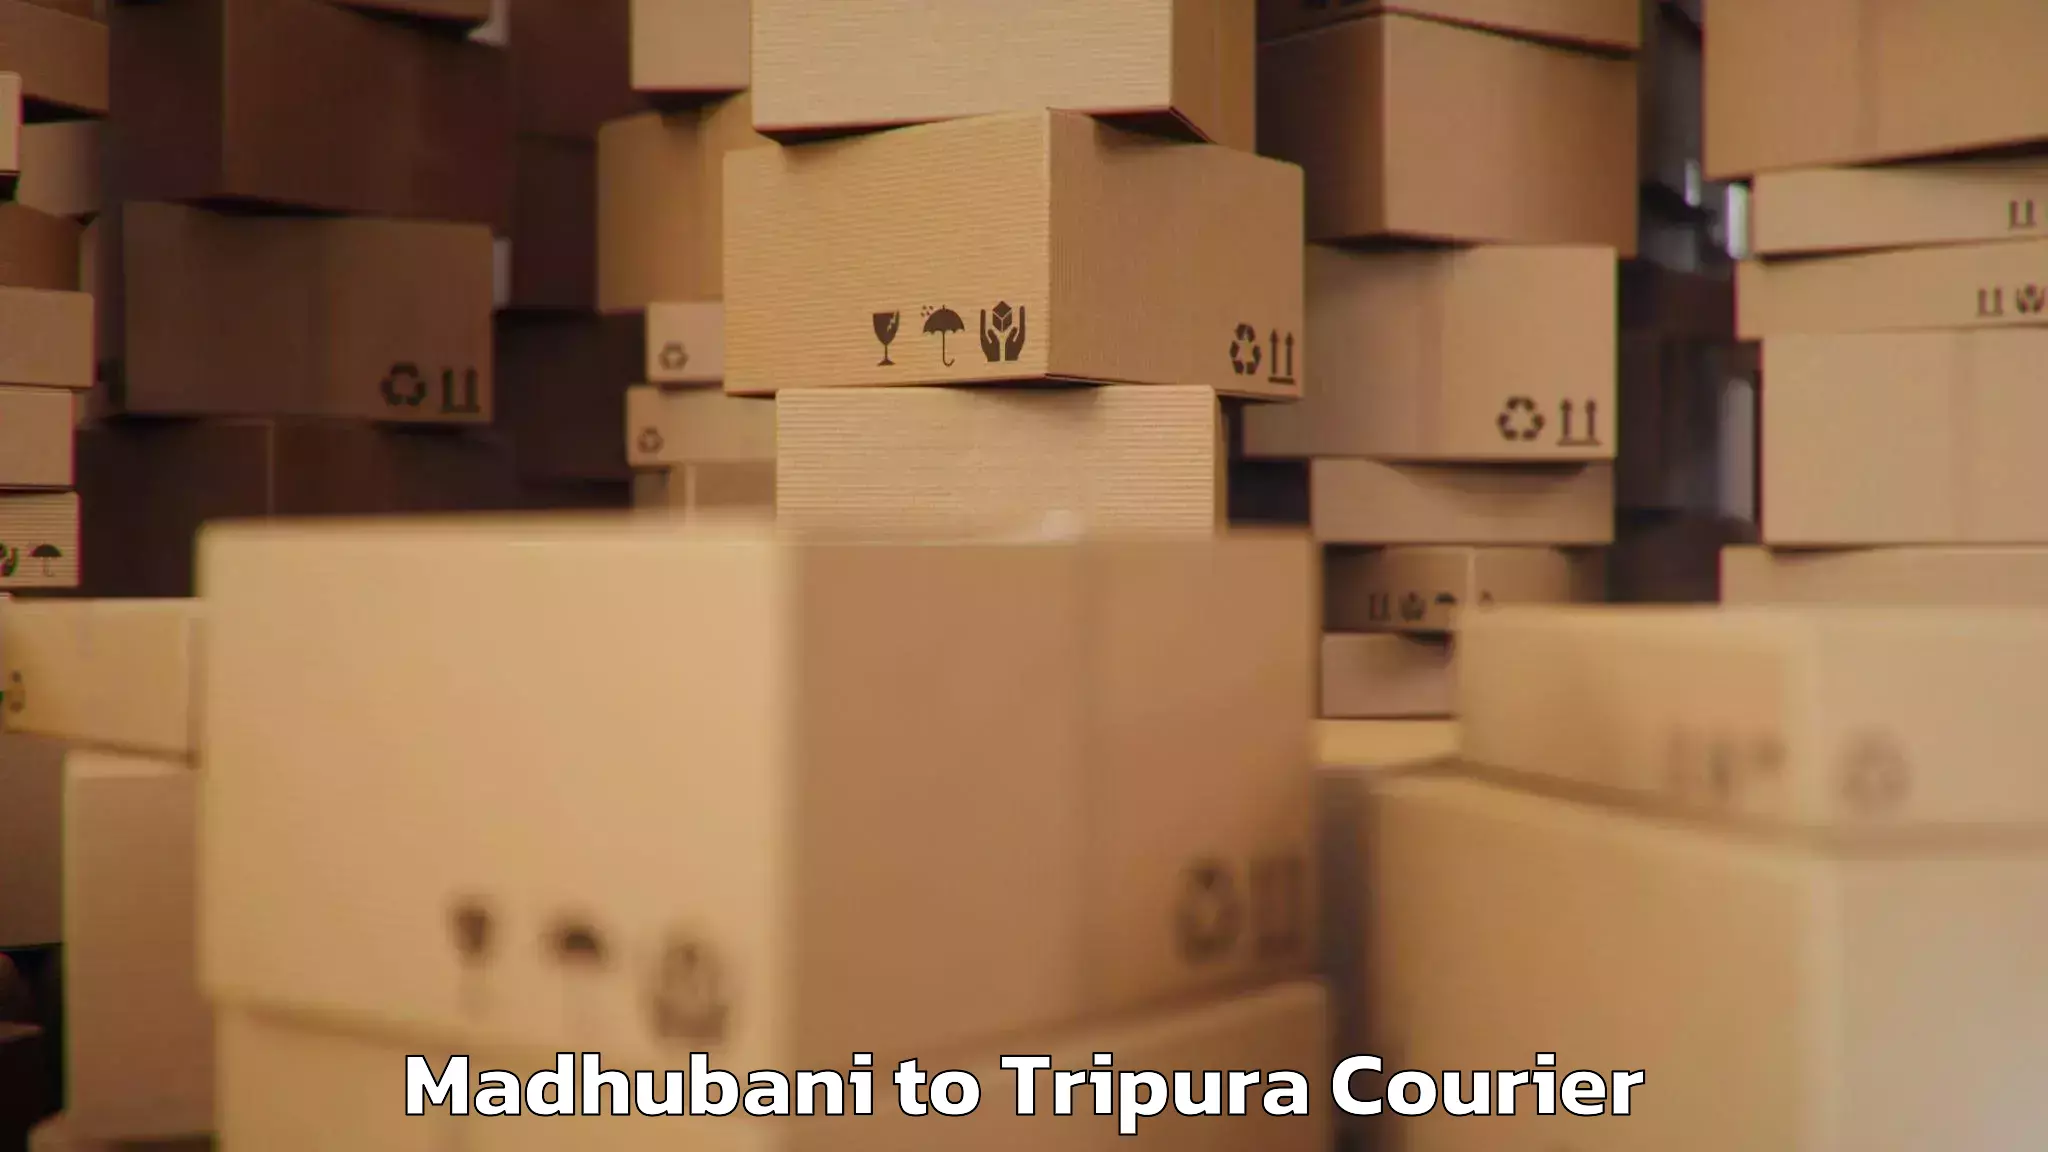 Luggage delivery system Madhubani to Tripura